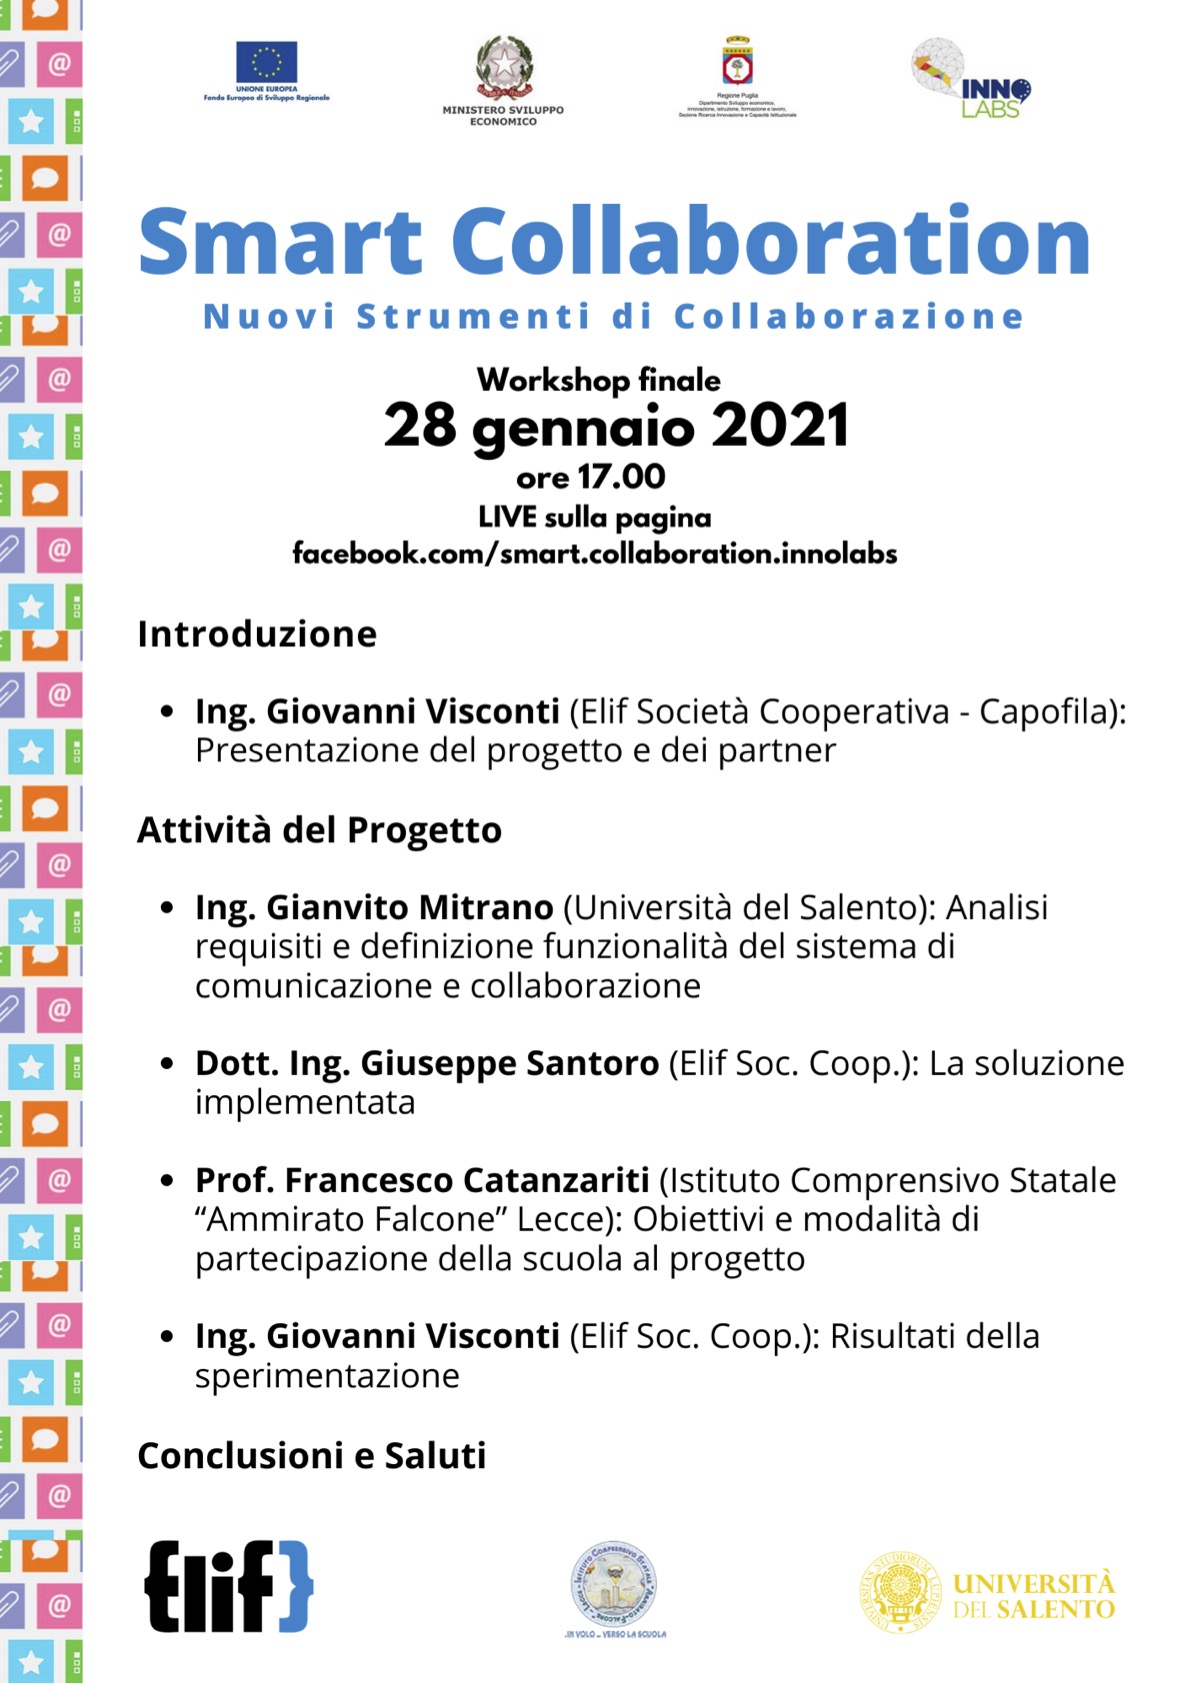 locandina evento smart collaboration copia